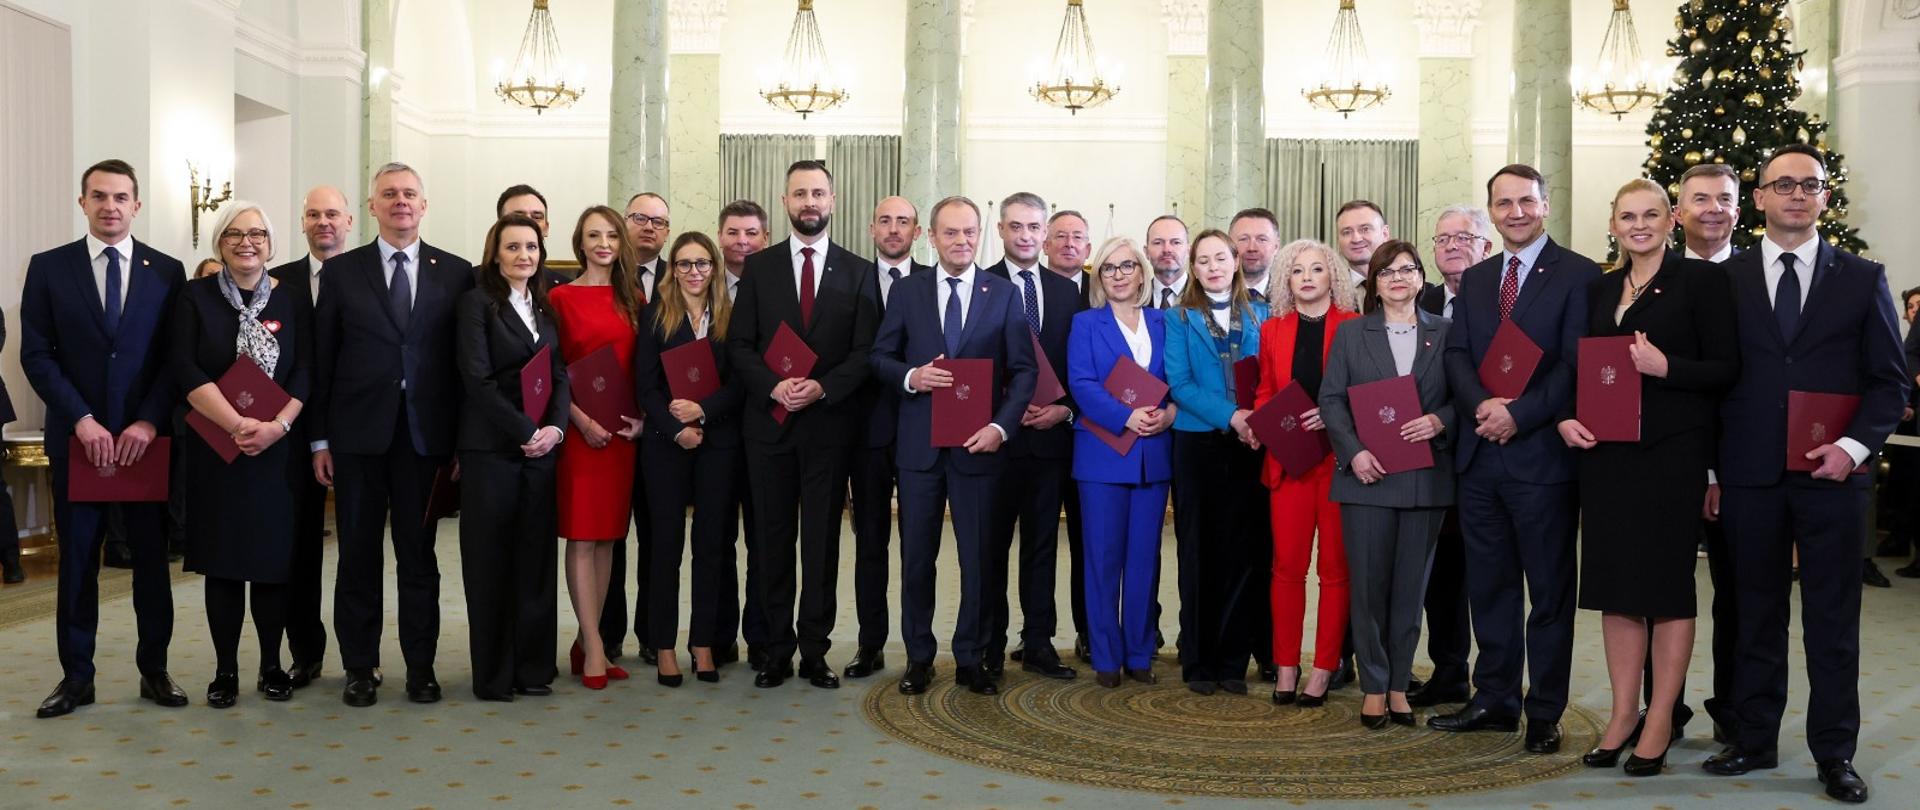 Zaprzysiężeni ministrowie rządu Donalda Tuska, pośrodku premier Tusk, siódmy od prawej w tylnym rzędzie minister sportu i turystyki Sławomir Nitras